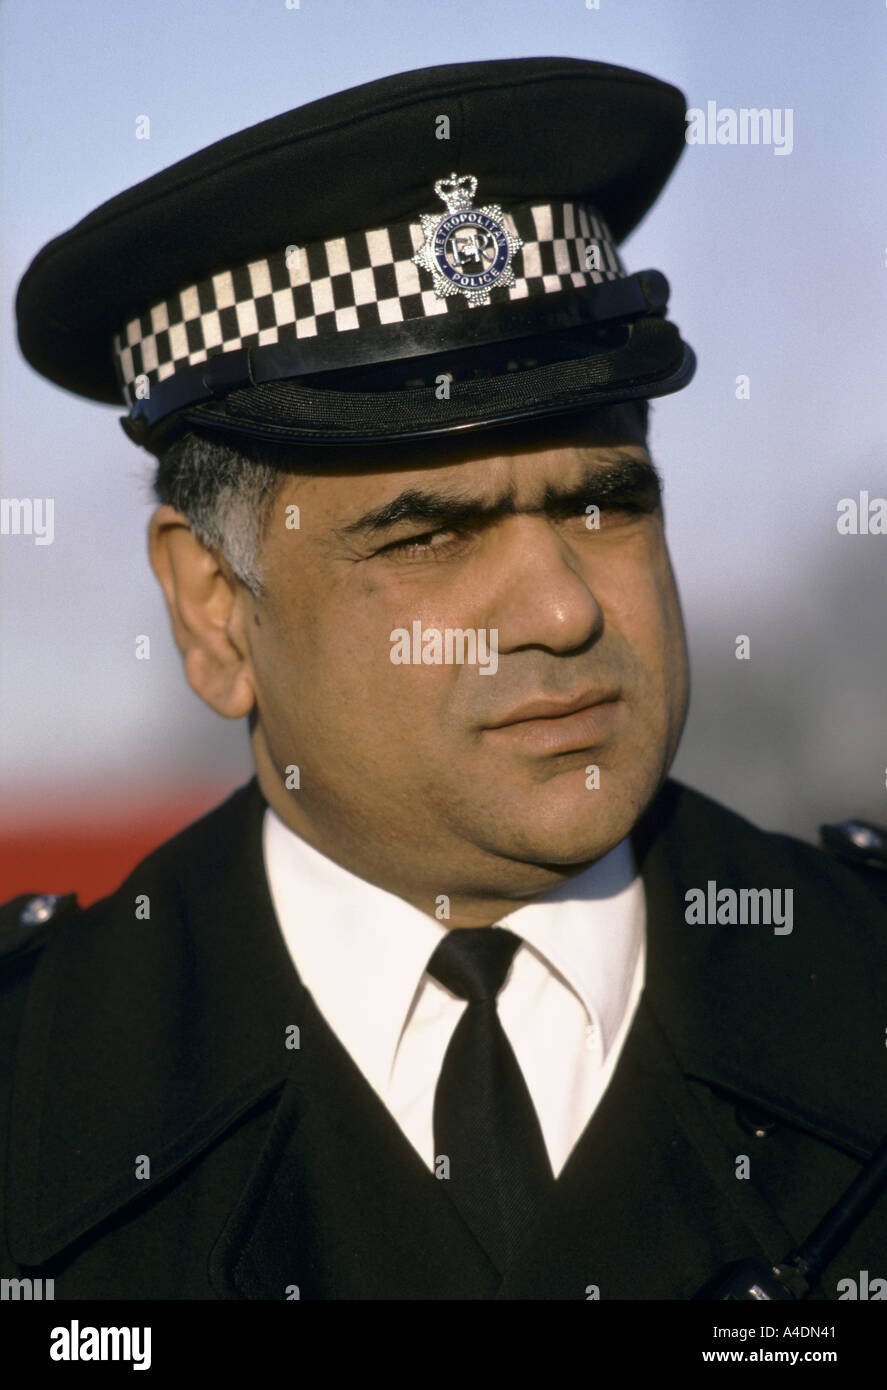 Le portrait d'un agent de police Asiatique, Royaume-Uni Banque D'Images